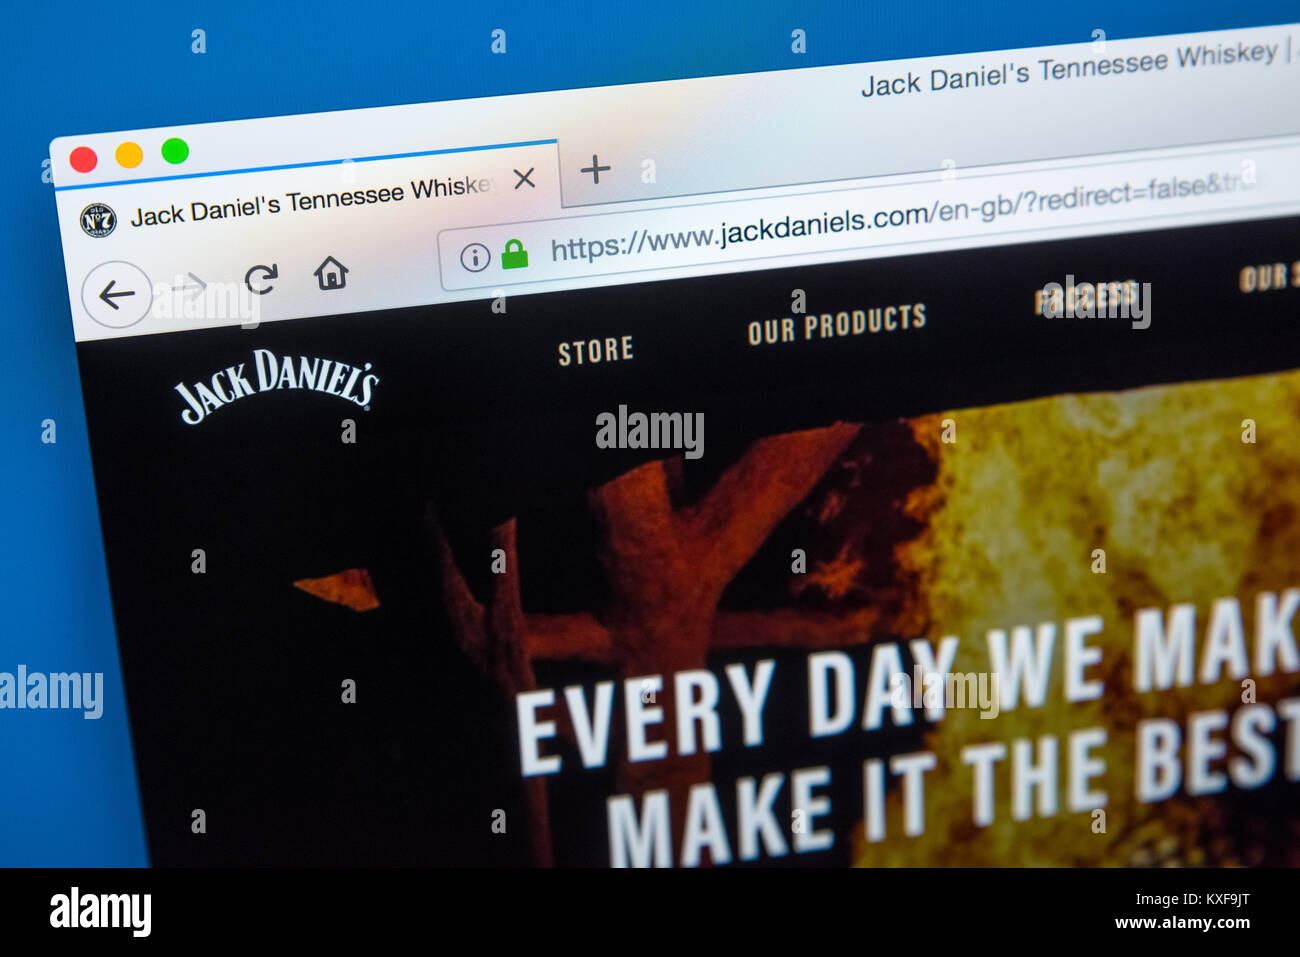 Londres, UK - 4 janvier 2018 : La page d'accueil du site web officiel de Jack Daniels - la marque de Tennessee Whiskey, le 4 janvier 2018. Banque D'Images